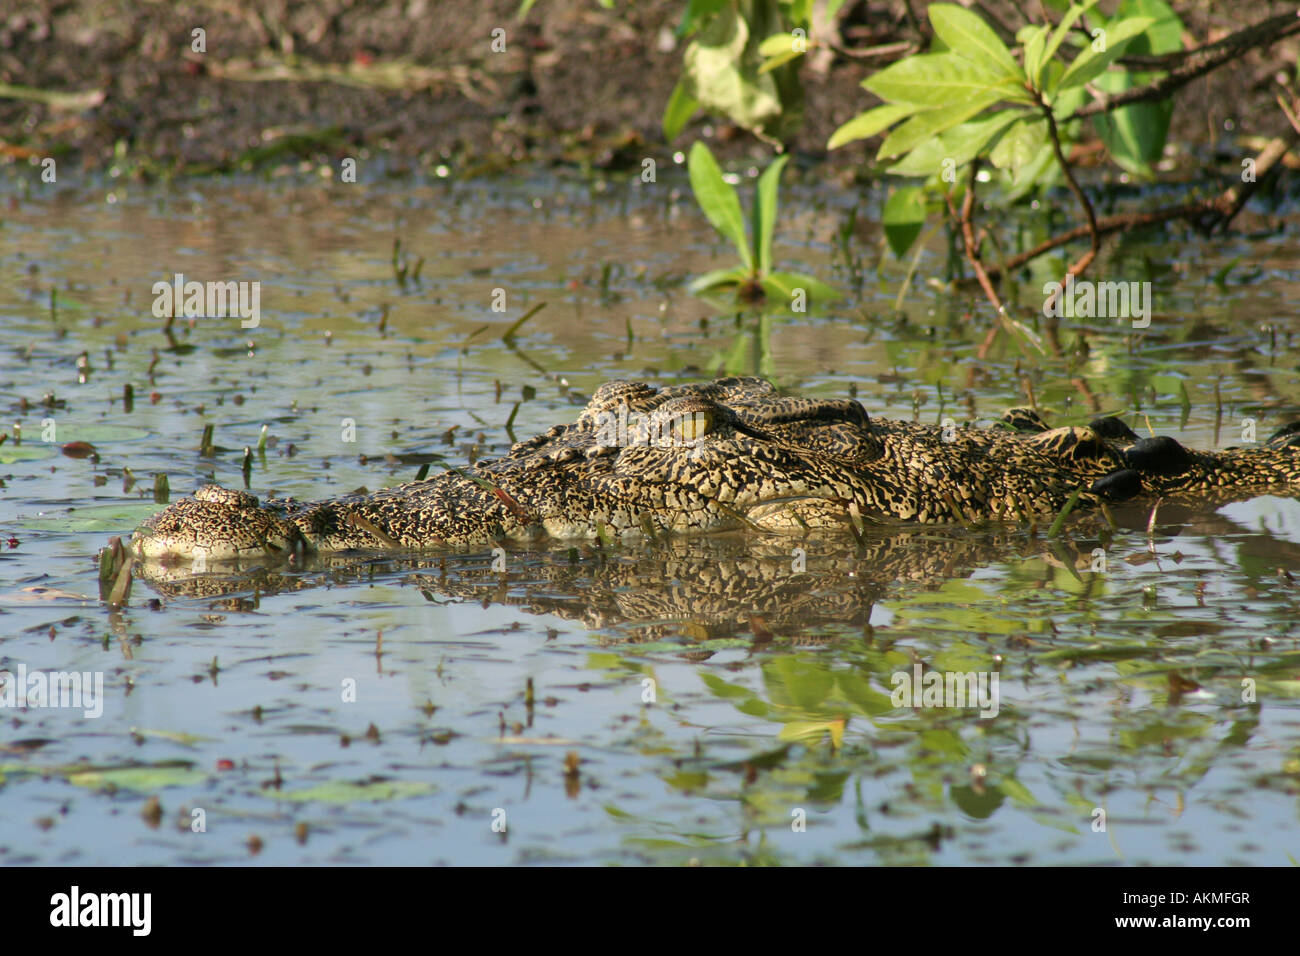 watchfull eye of crocodile Stock Photo